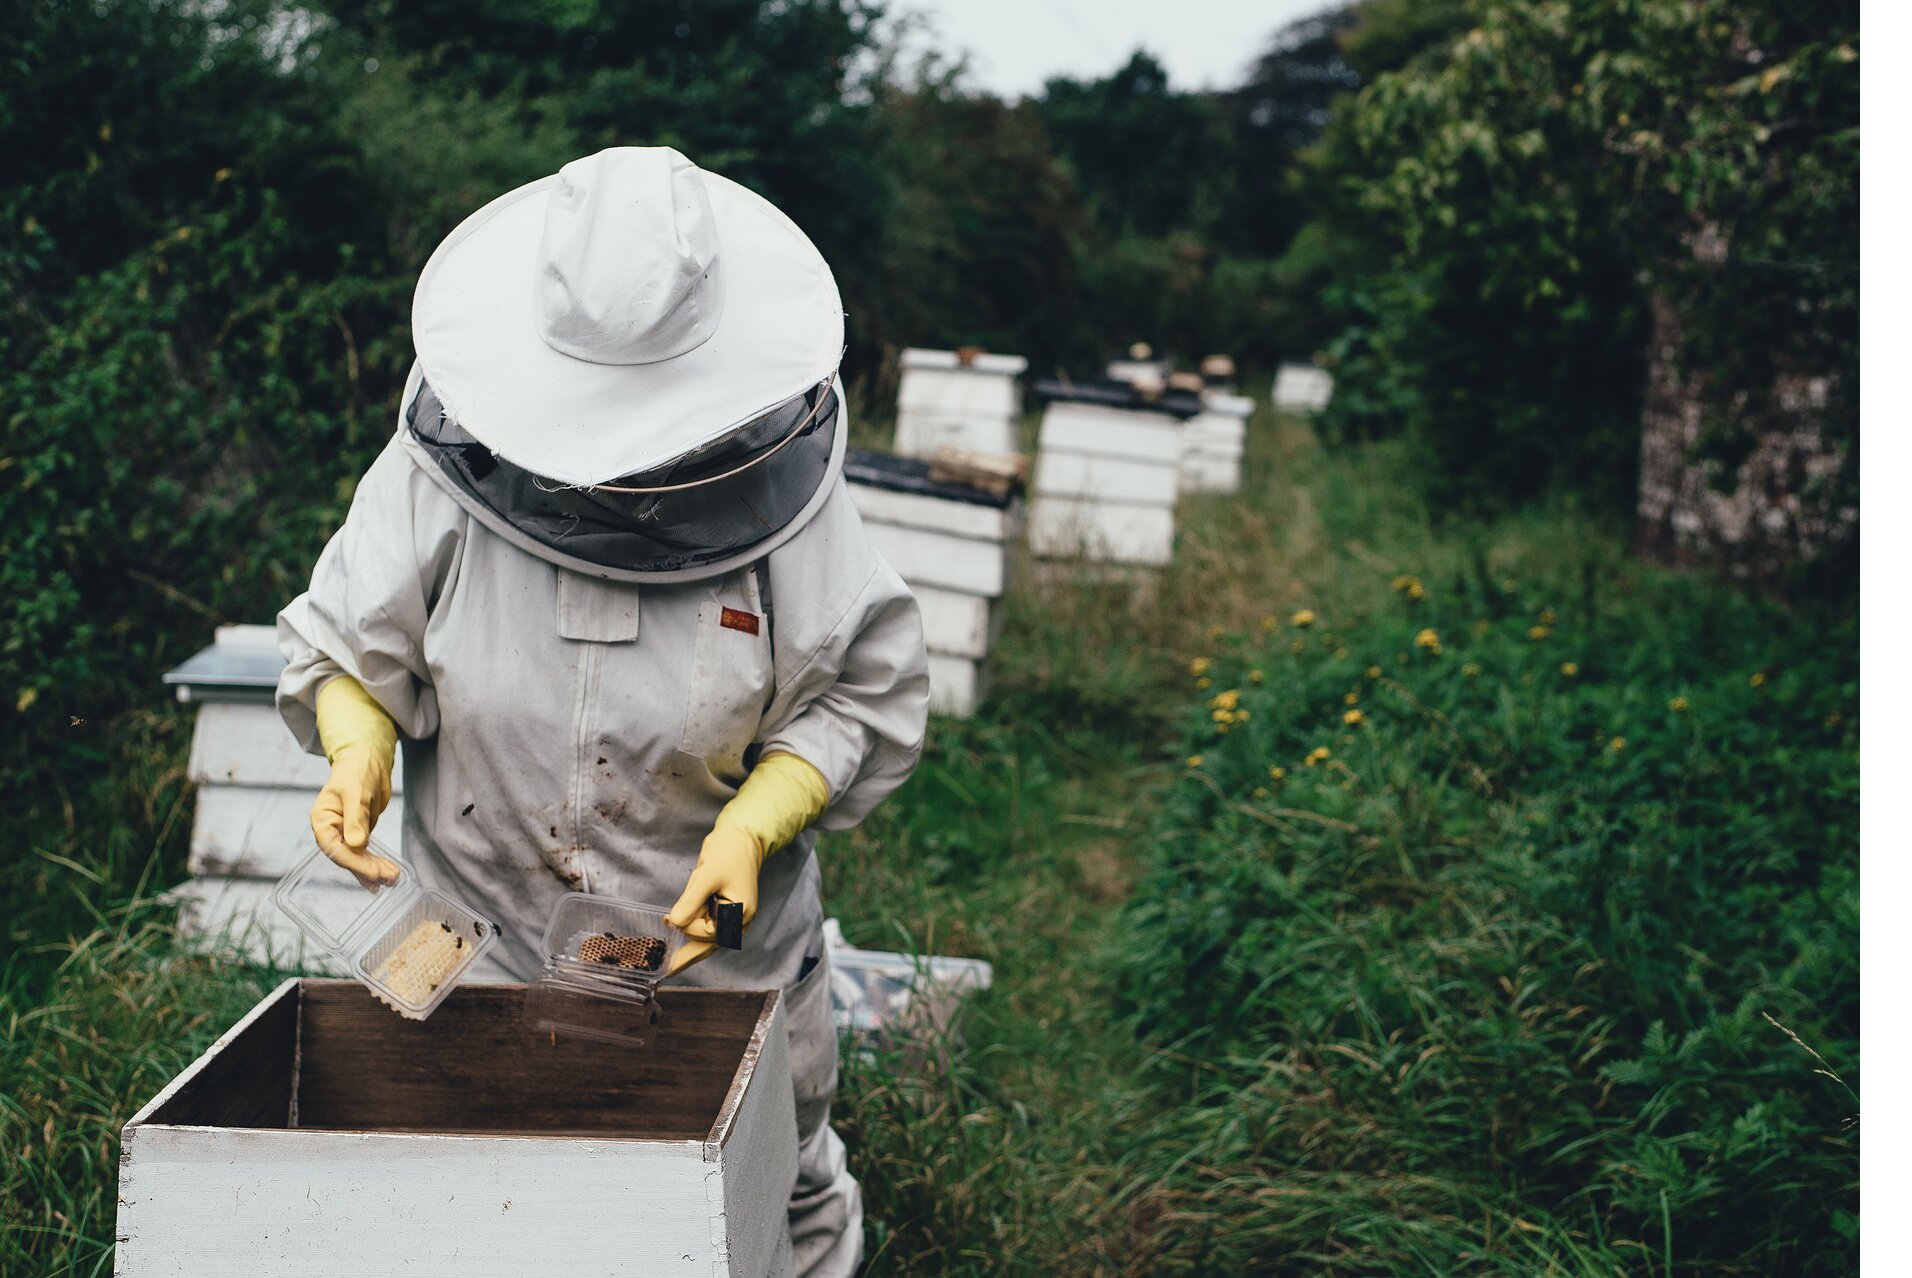 LABEL ABEILLE - transhumance de ruches connectées pour assurer un garde-manger aux abeilles